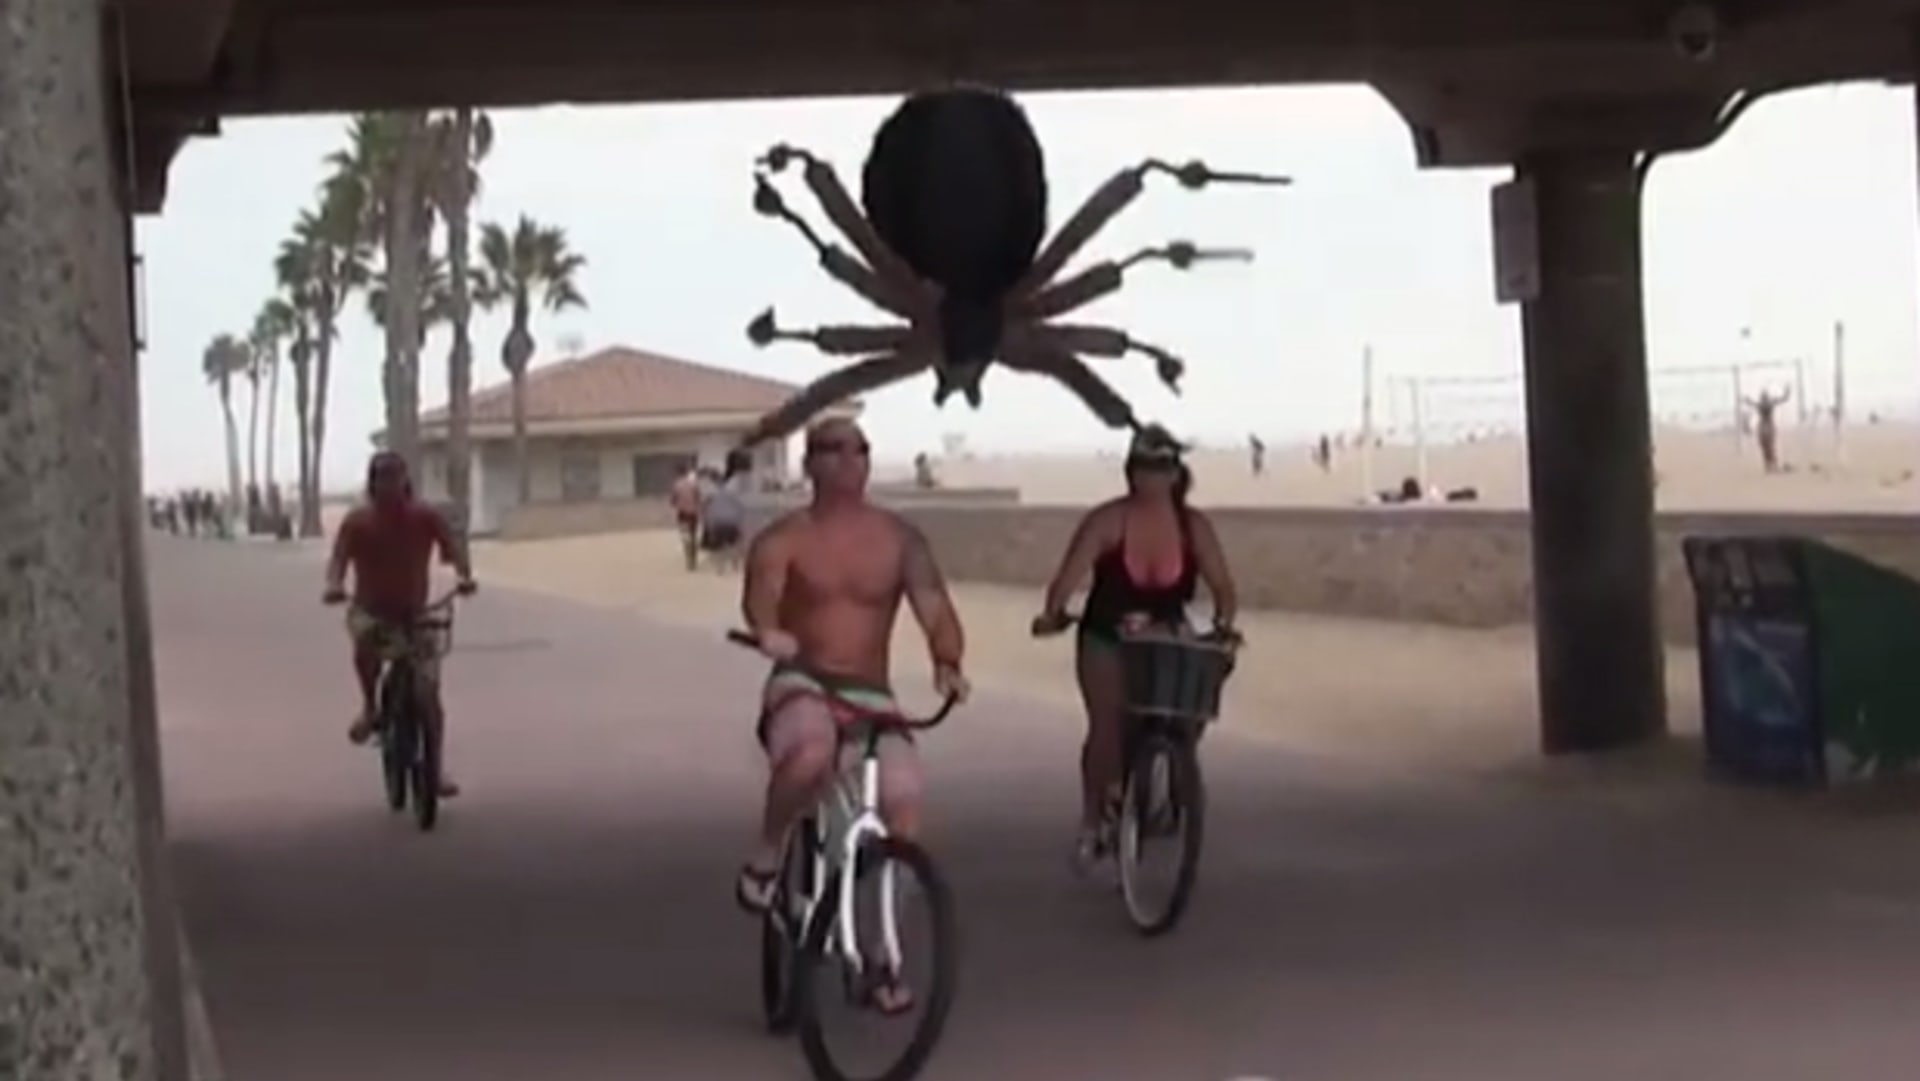 Děsivé! Na ulici se objevil obří pavouk!